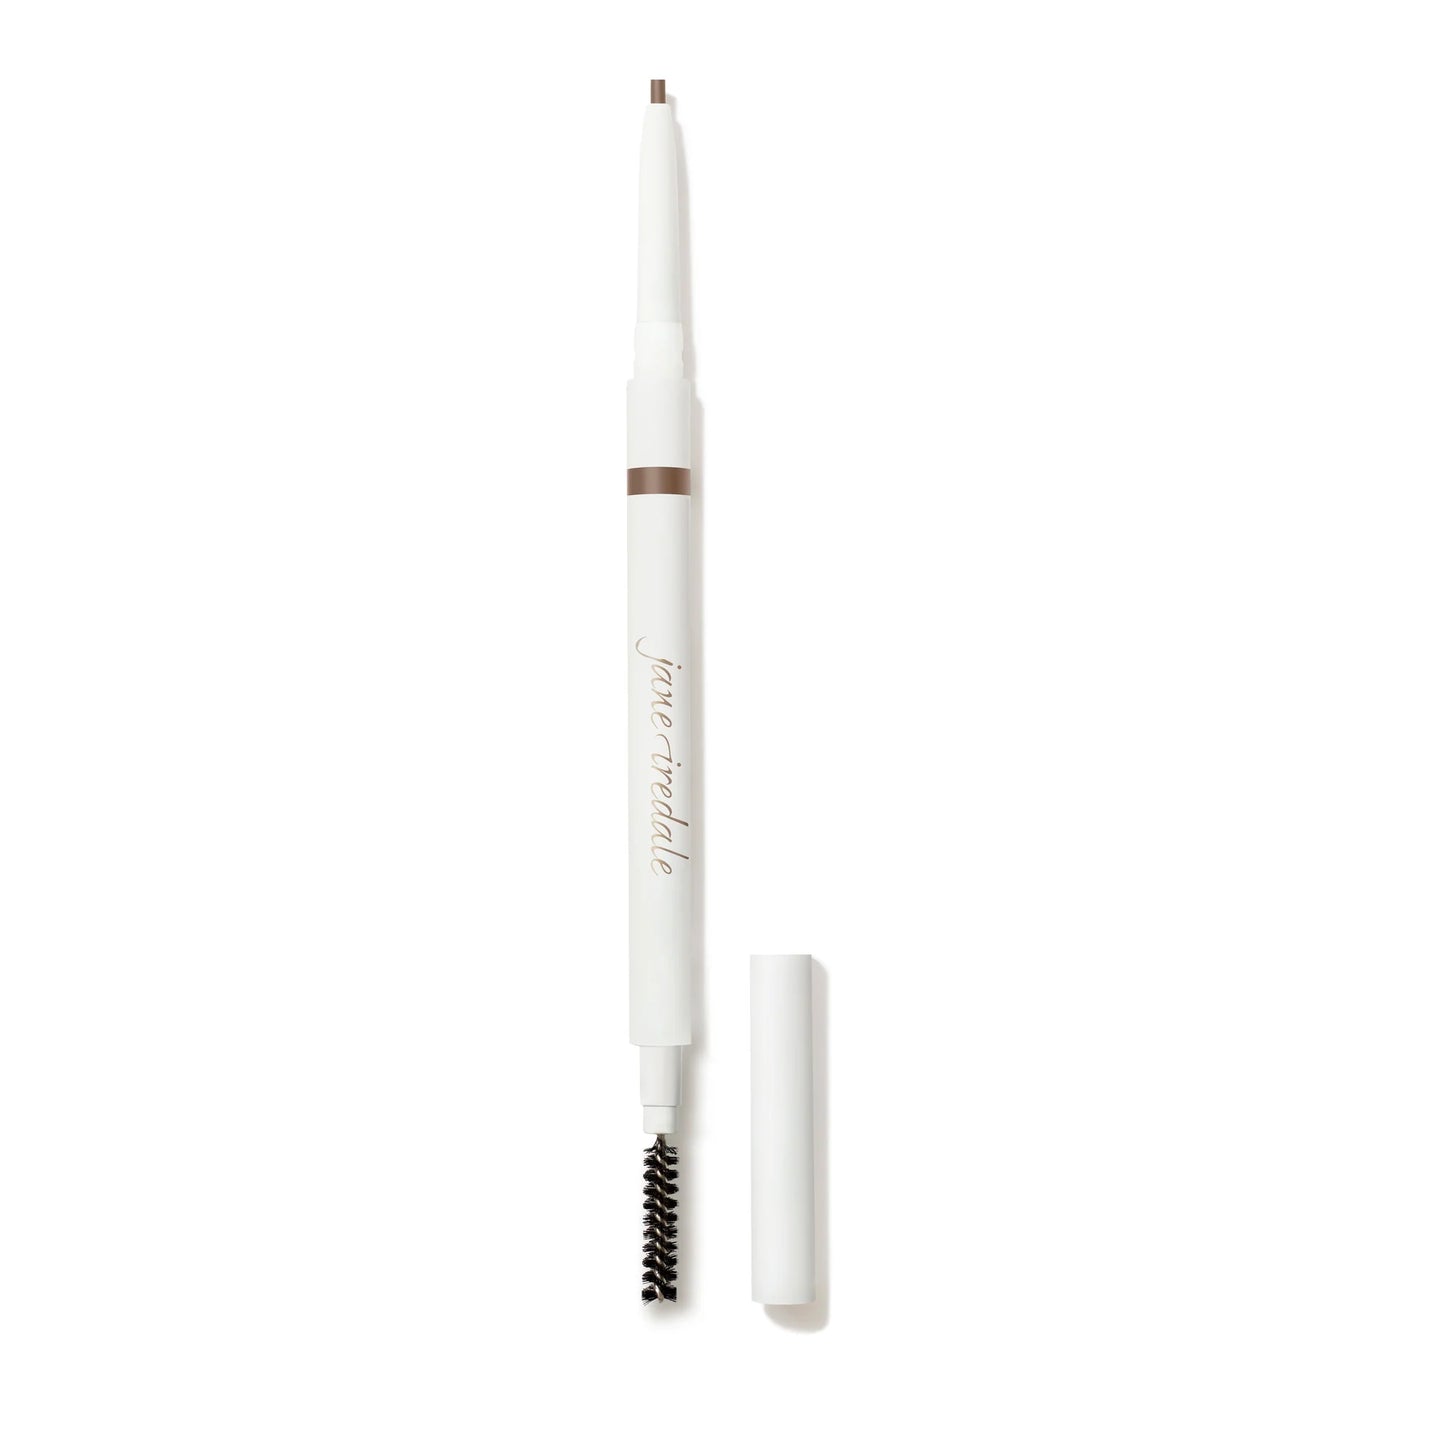 PureBrow Precision Pencil - Neutral Blonde